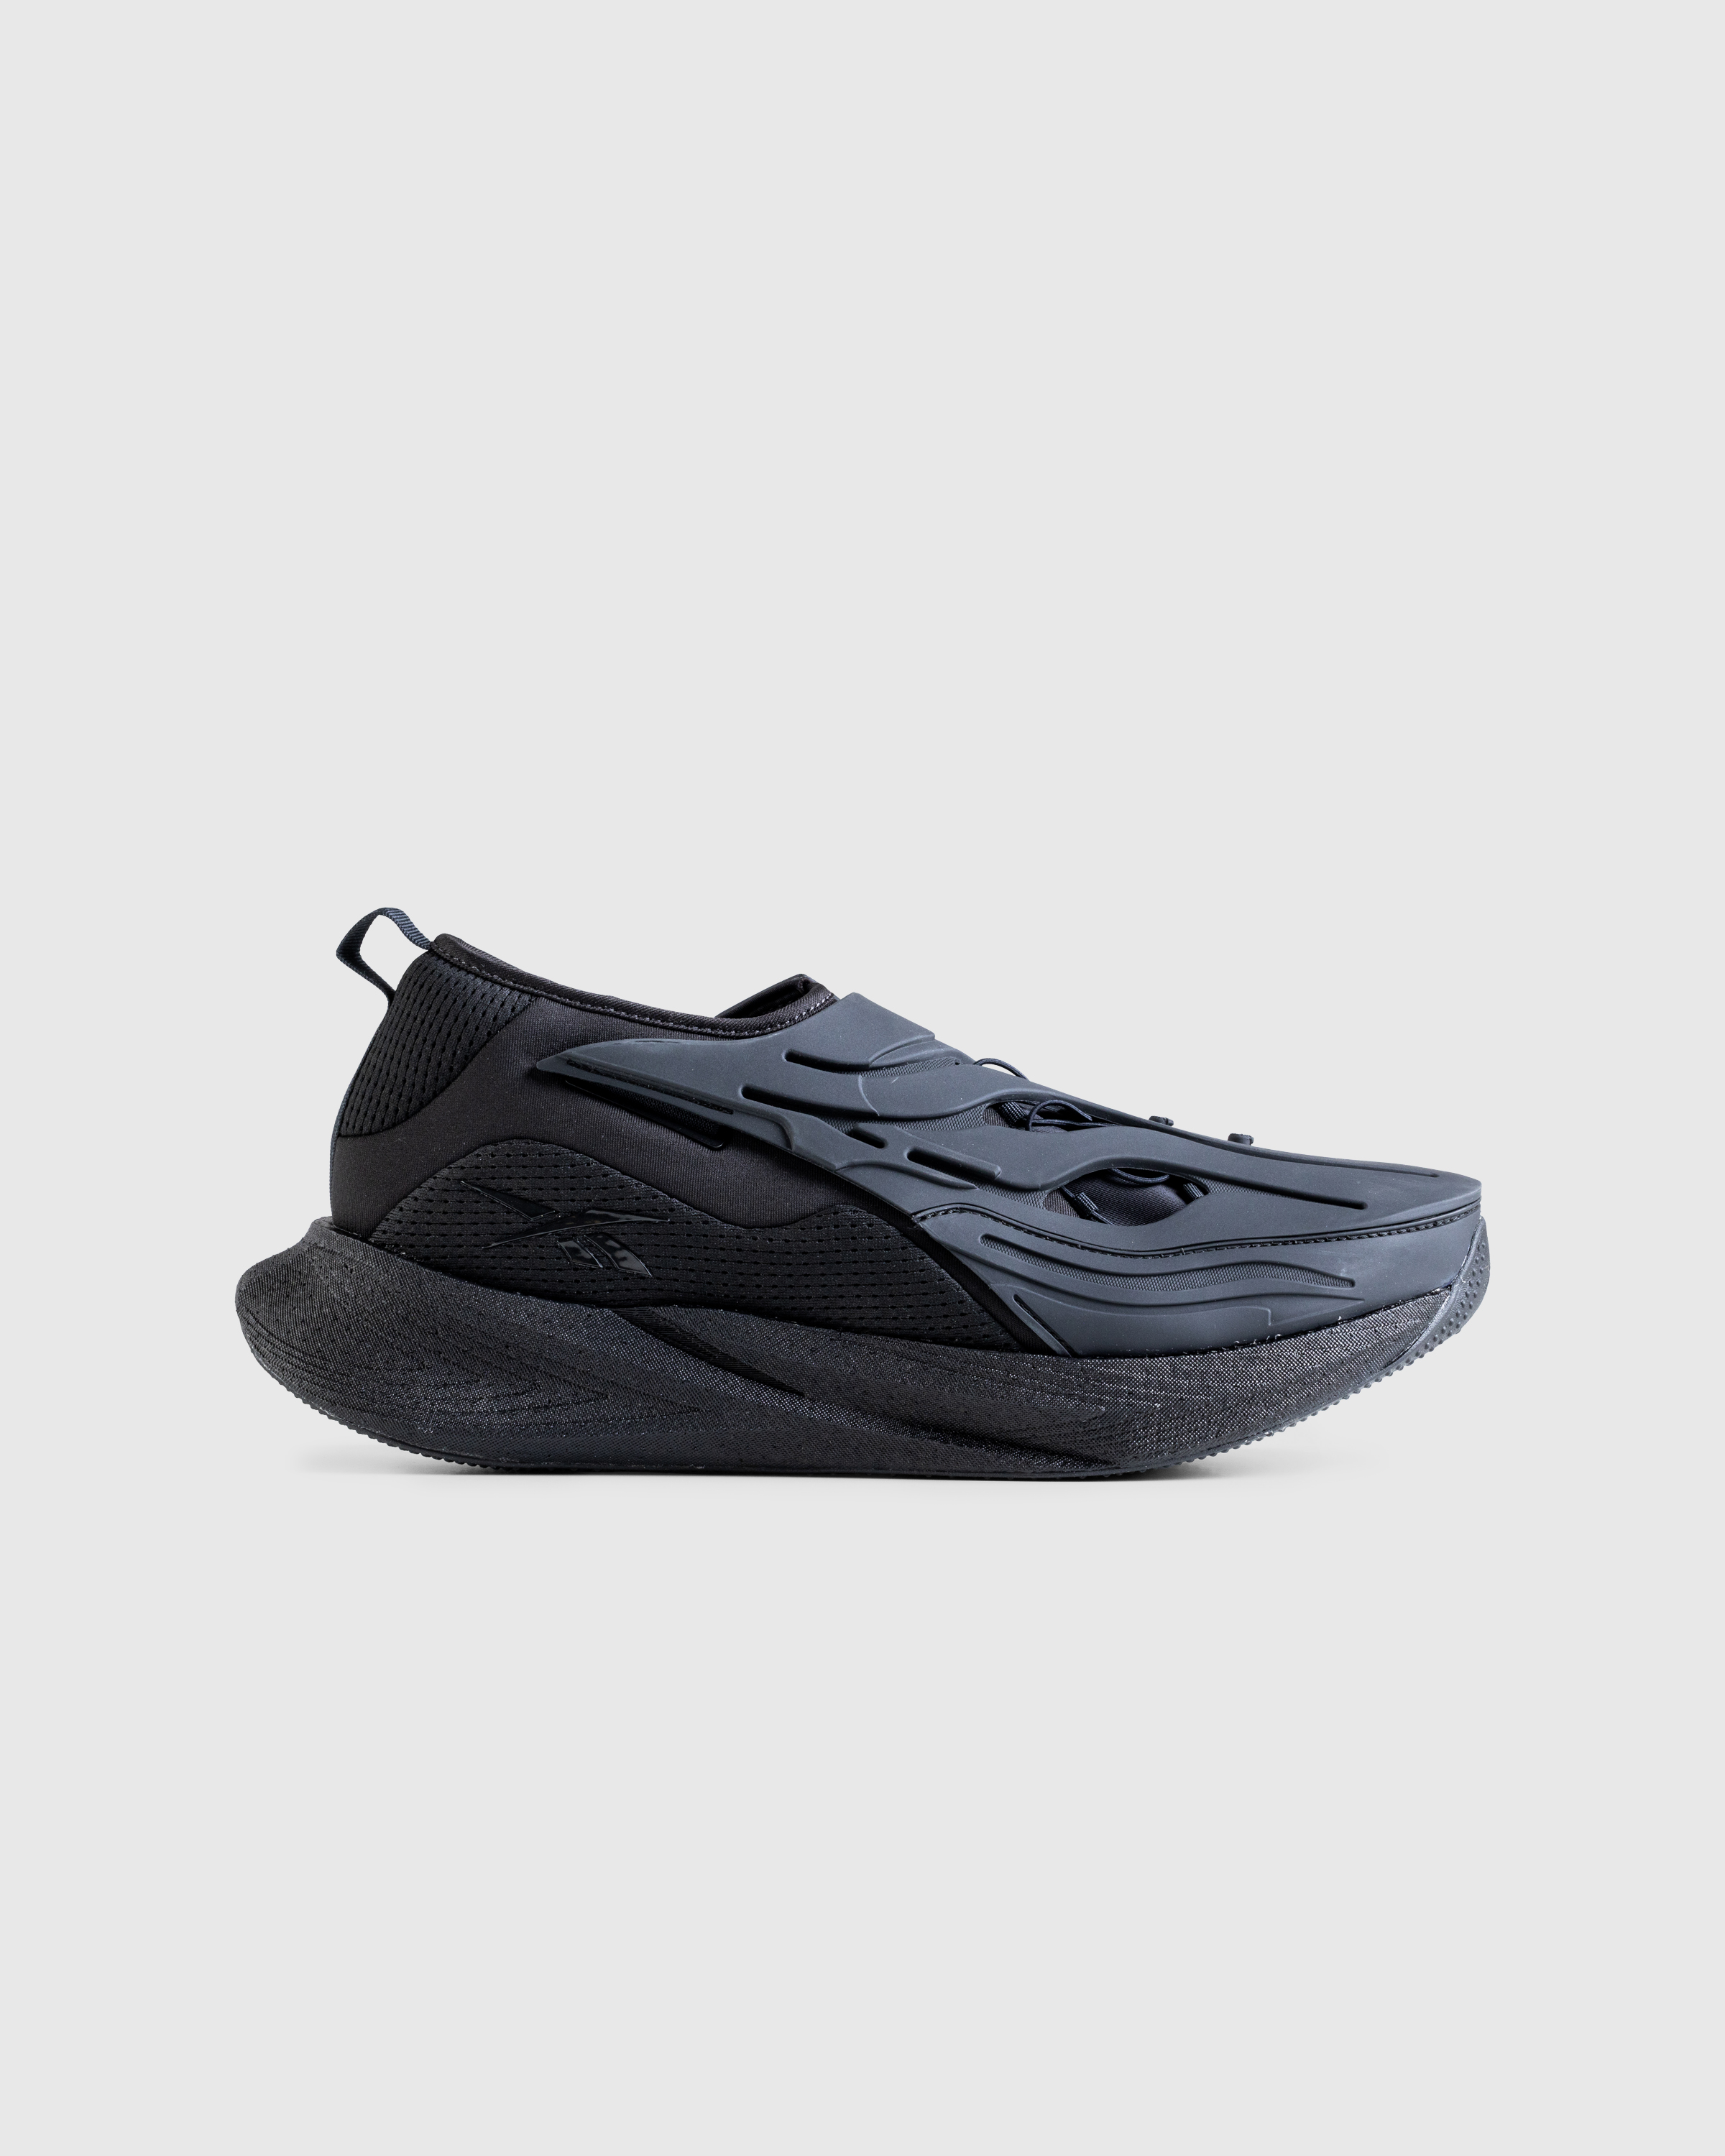 Reebok – Floatride Energy Argus X Black - Sneakers - Black - Image 1